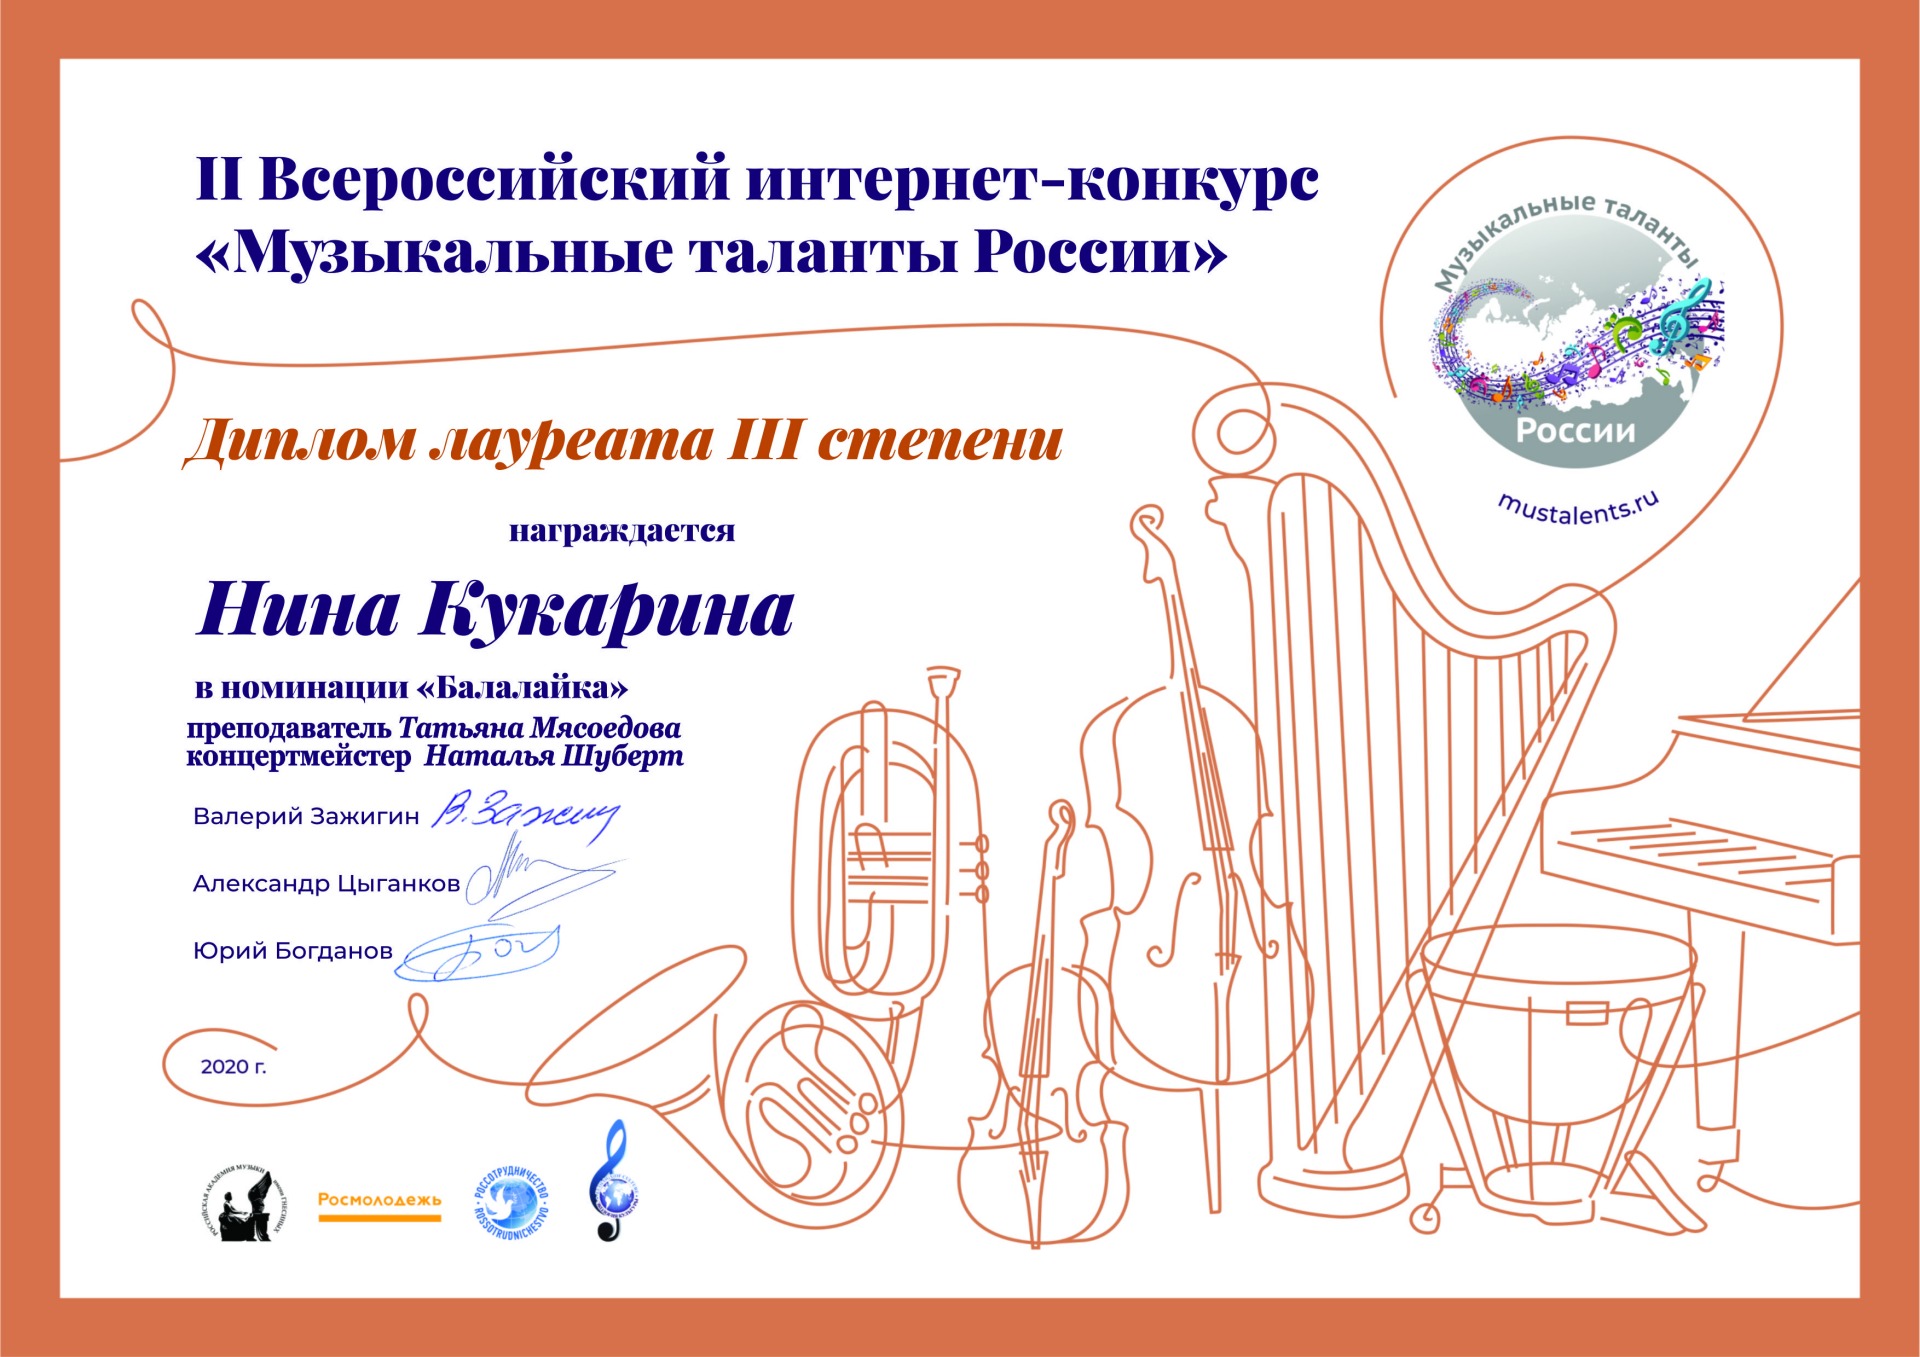 Лауреат III степени - Нина Кукарина (балалайка, преп.Мясоедова Т.С., конц. Шуберт Н.С.)